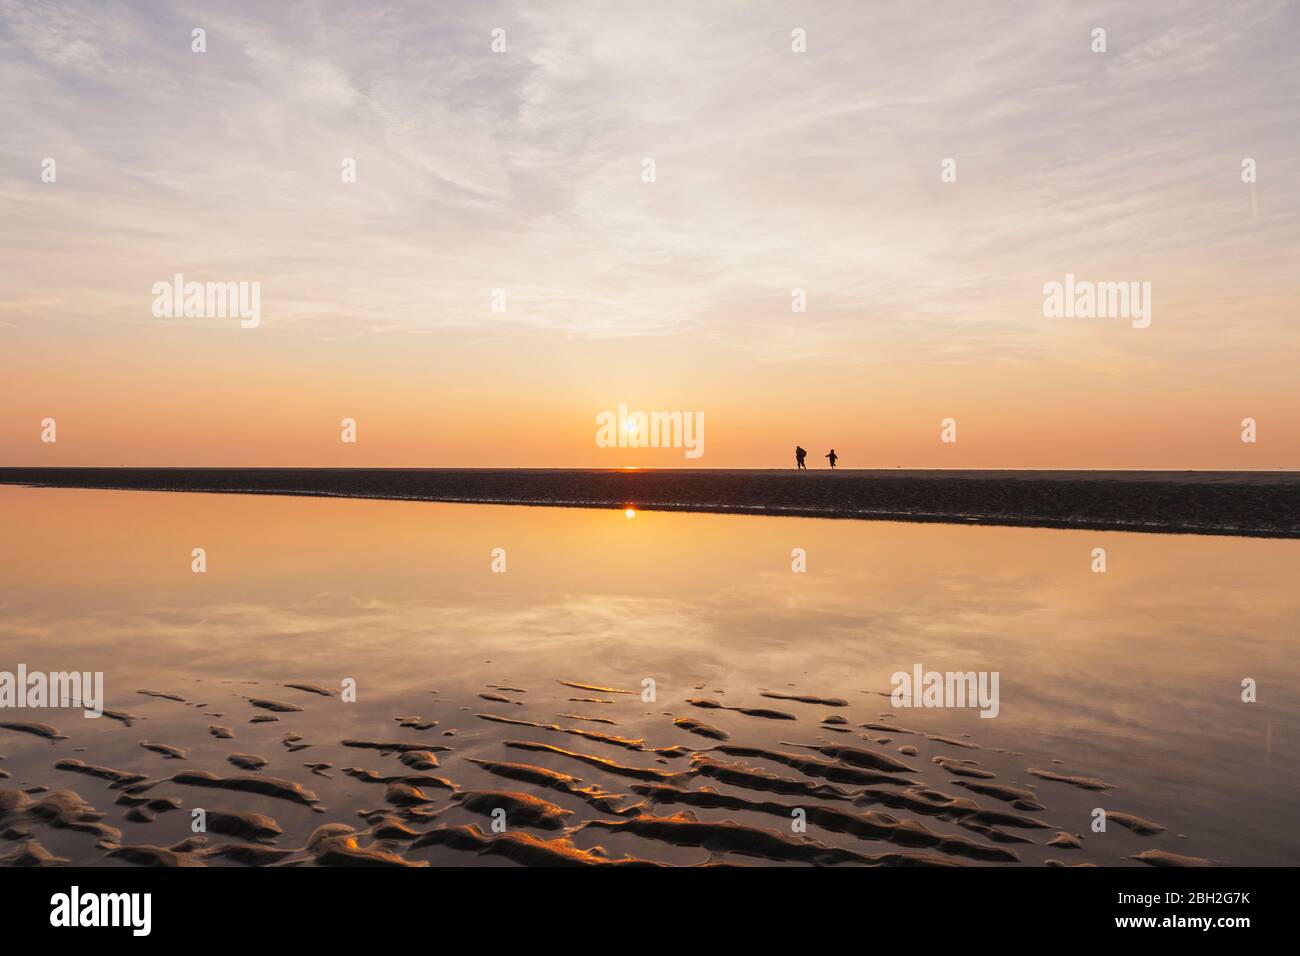 Vue lointaine des silhouettes sur la plage contre le ciel au coucher du soleil, côte de la mer du Nord, Flandre, Belgique Banque D'Images